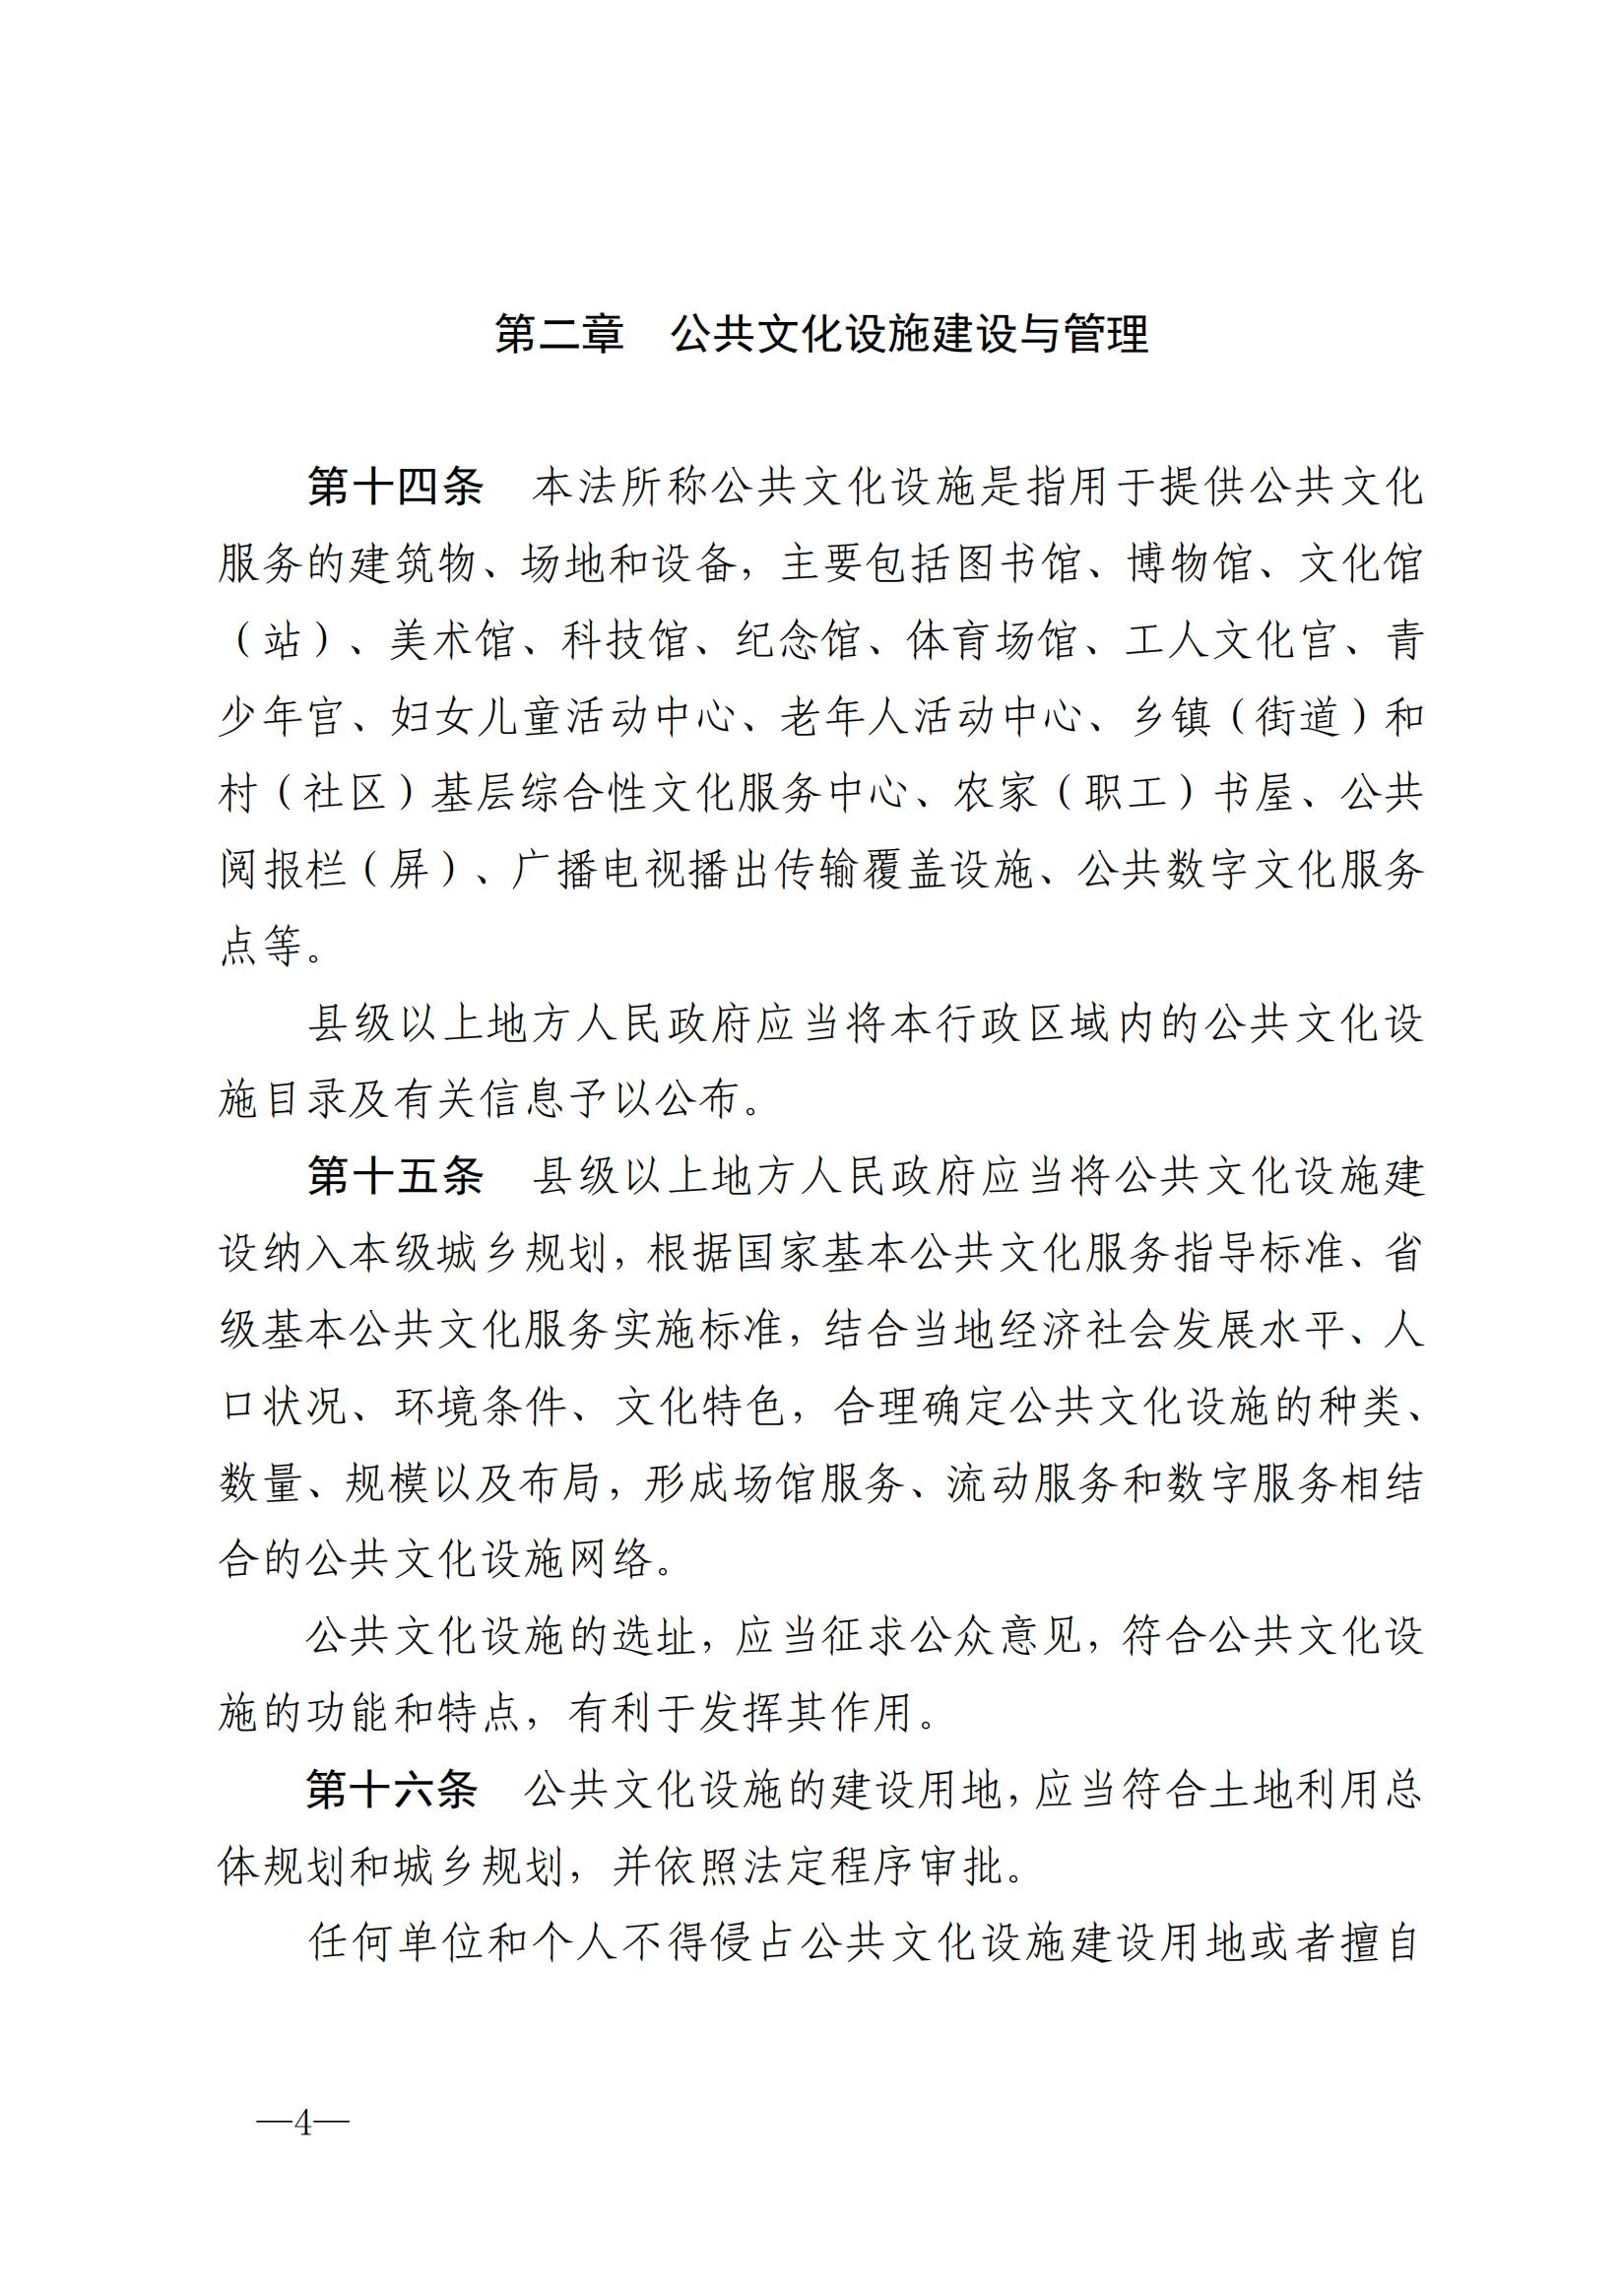 中华人民共和国公共文化服务保障法_03.jpg